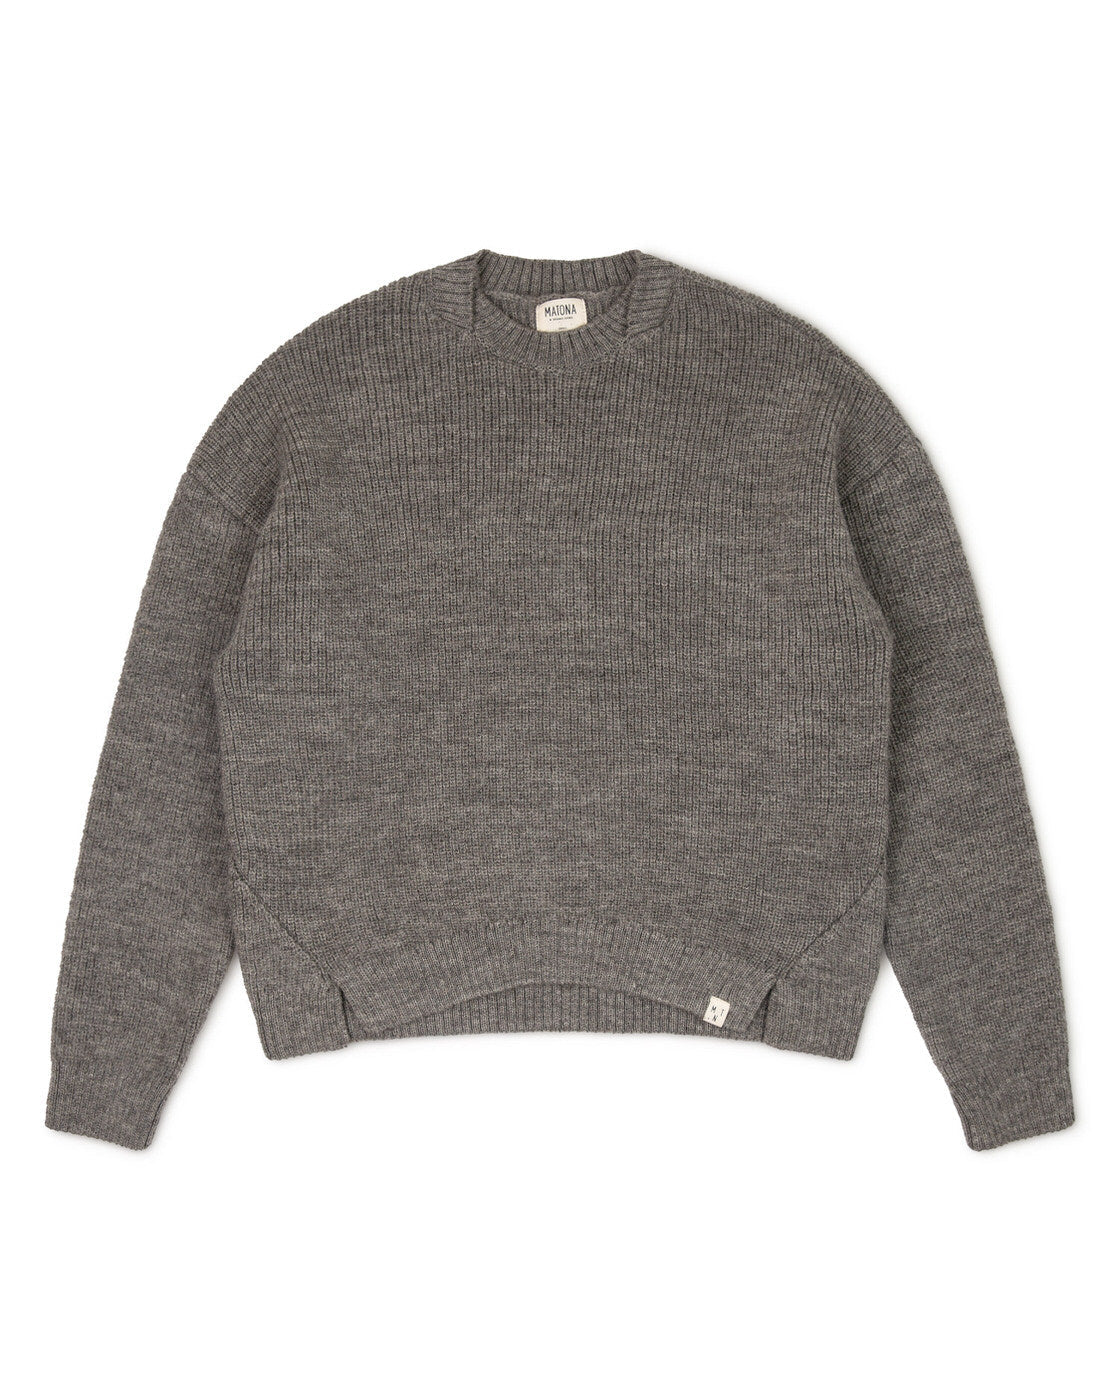 Gray, knitted sweater basalt made of merino and alpaca yarn from Matona